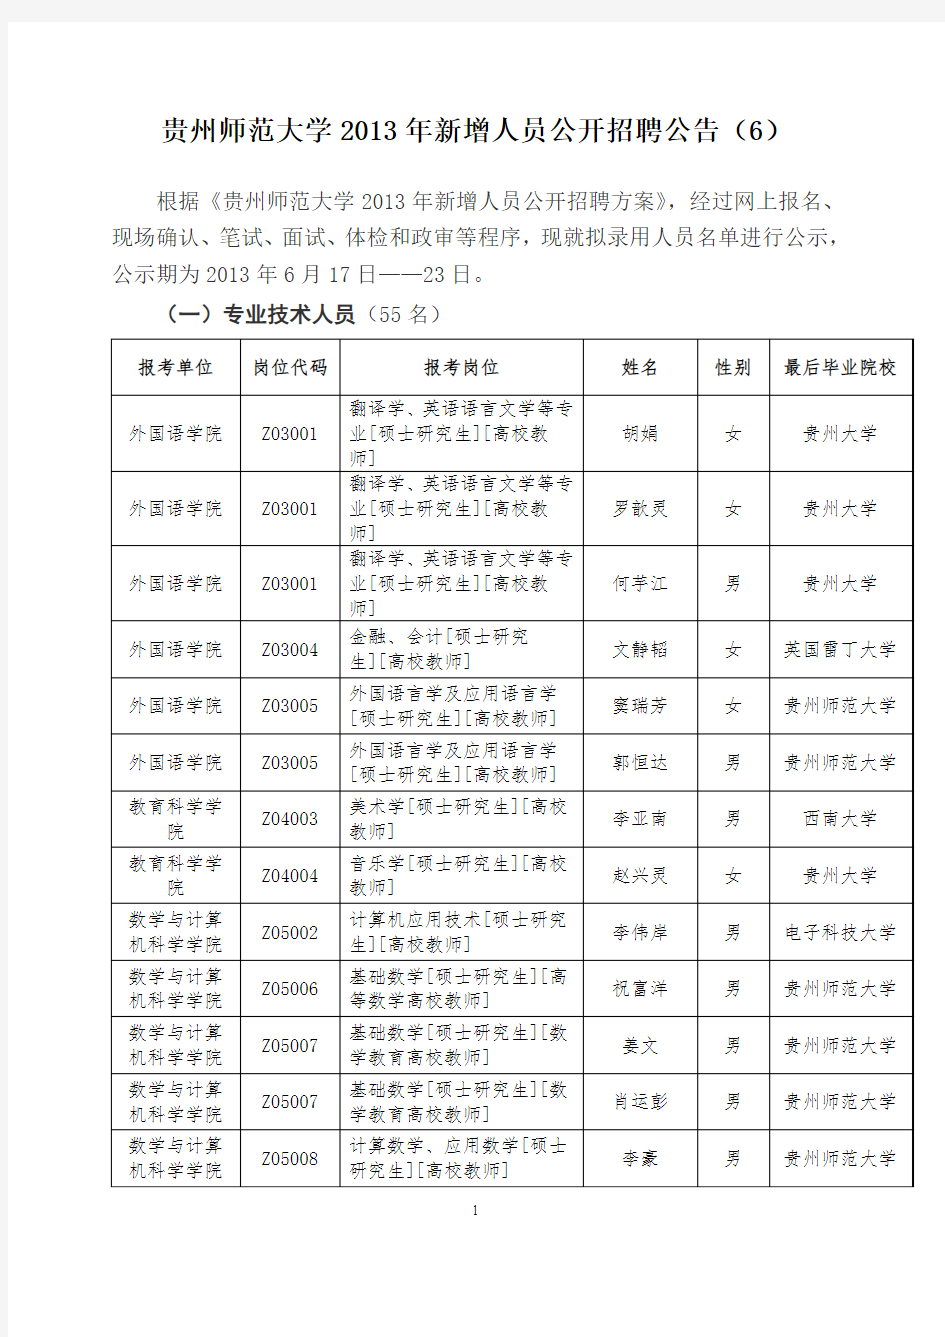 贵州师范大学2010年新增人员公开招聘公告(4)